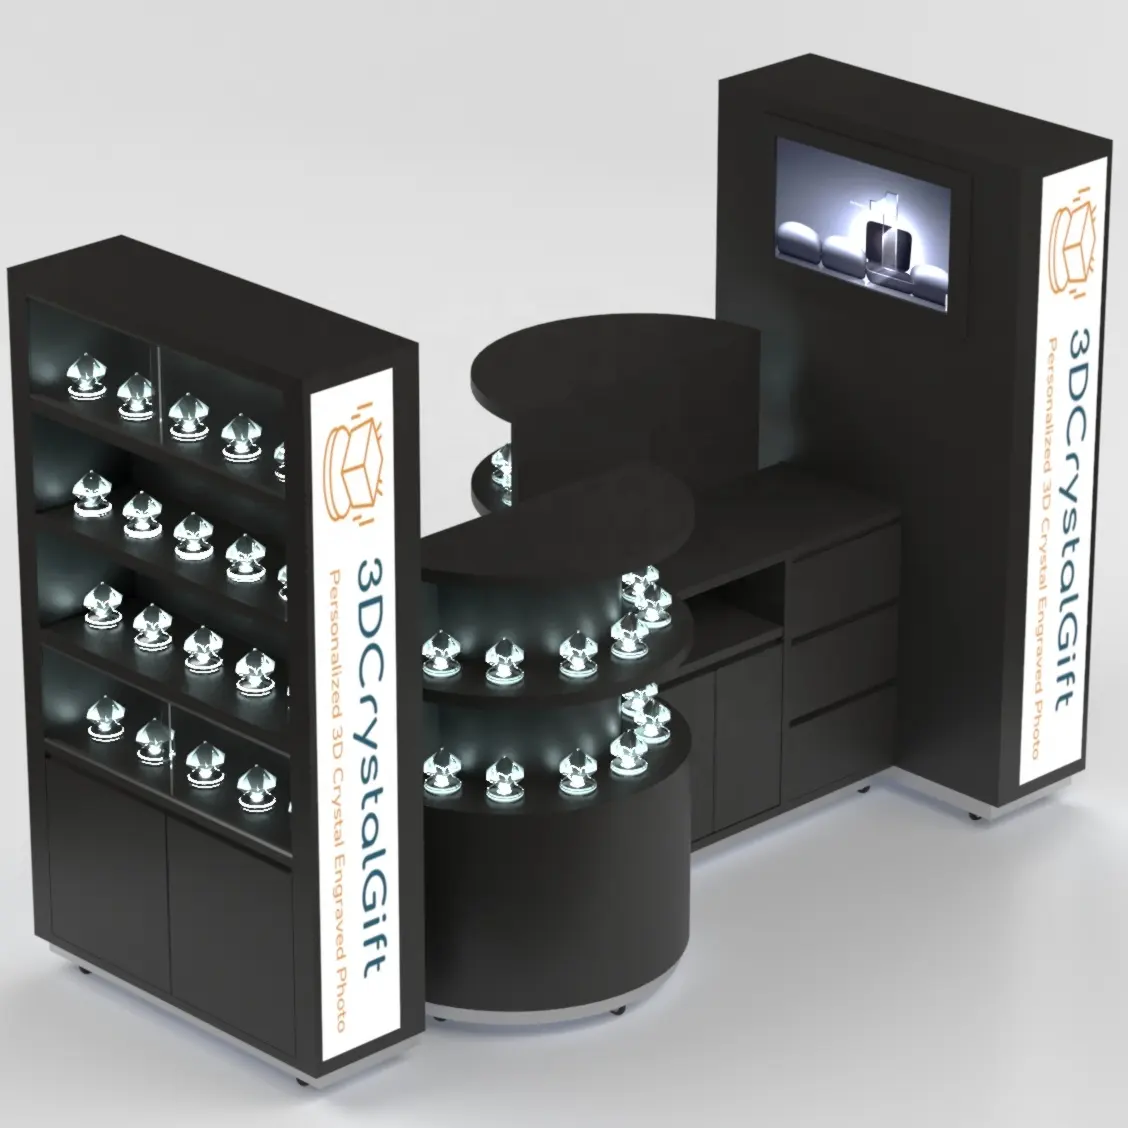 تصميم كشك كريستال مركز تسوق مخصص رائع لعرض منتجات مبتكرة ثلاثية الأبعاد